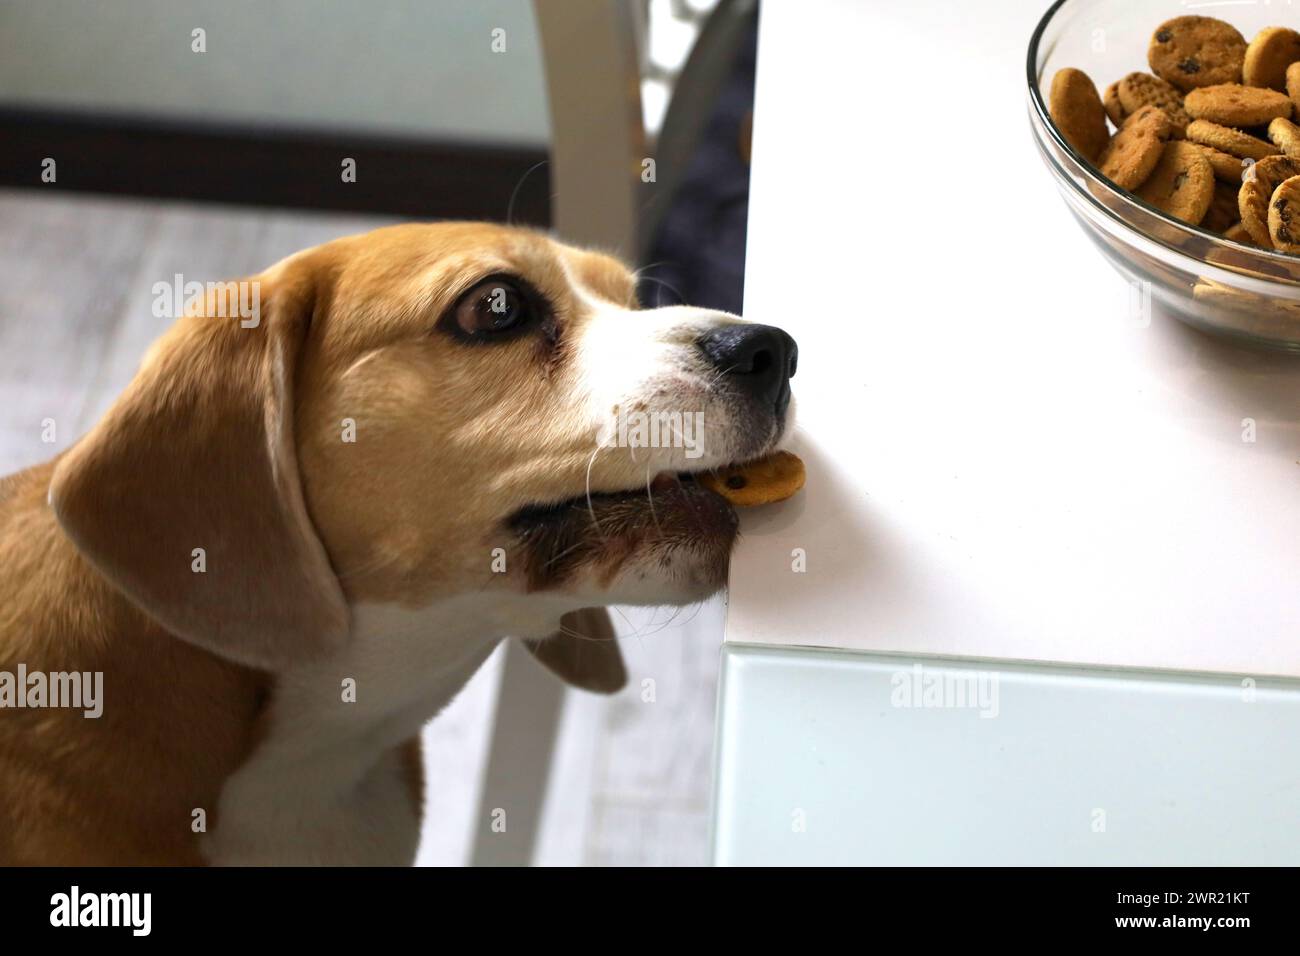 Da solo in cucina, un cane beagle affamato cerca di raggiungere i biscotti lasciati dal proprietario Foto Stock